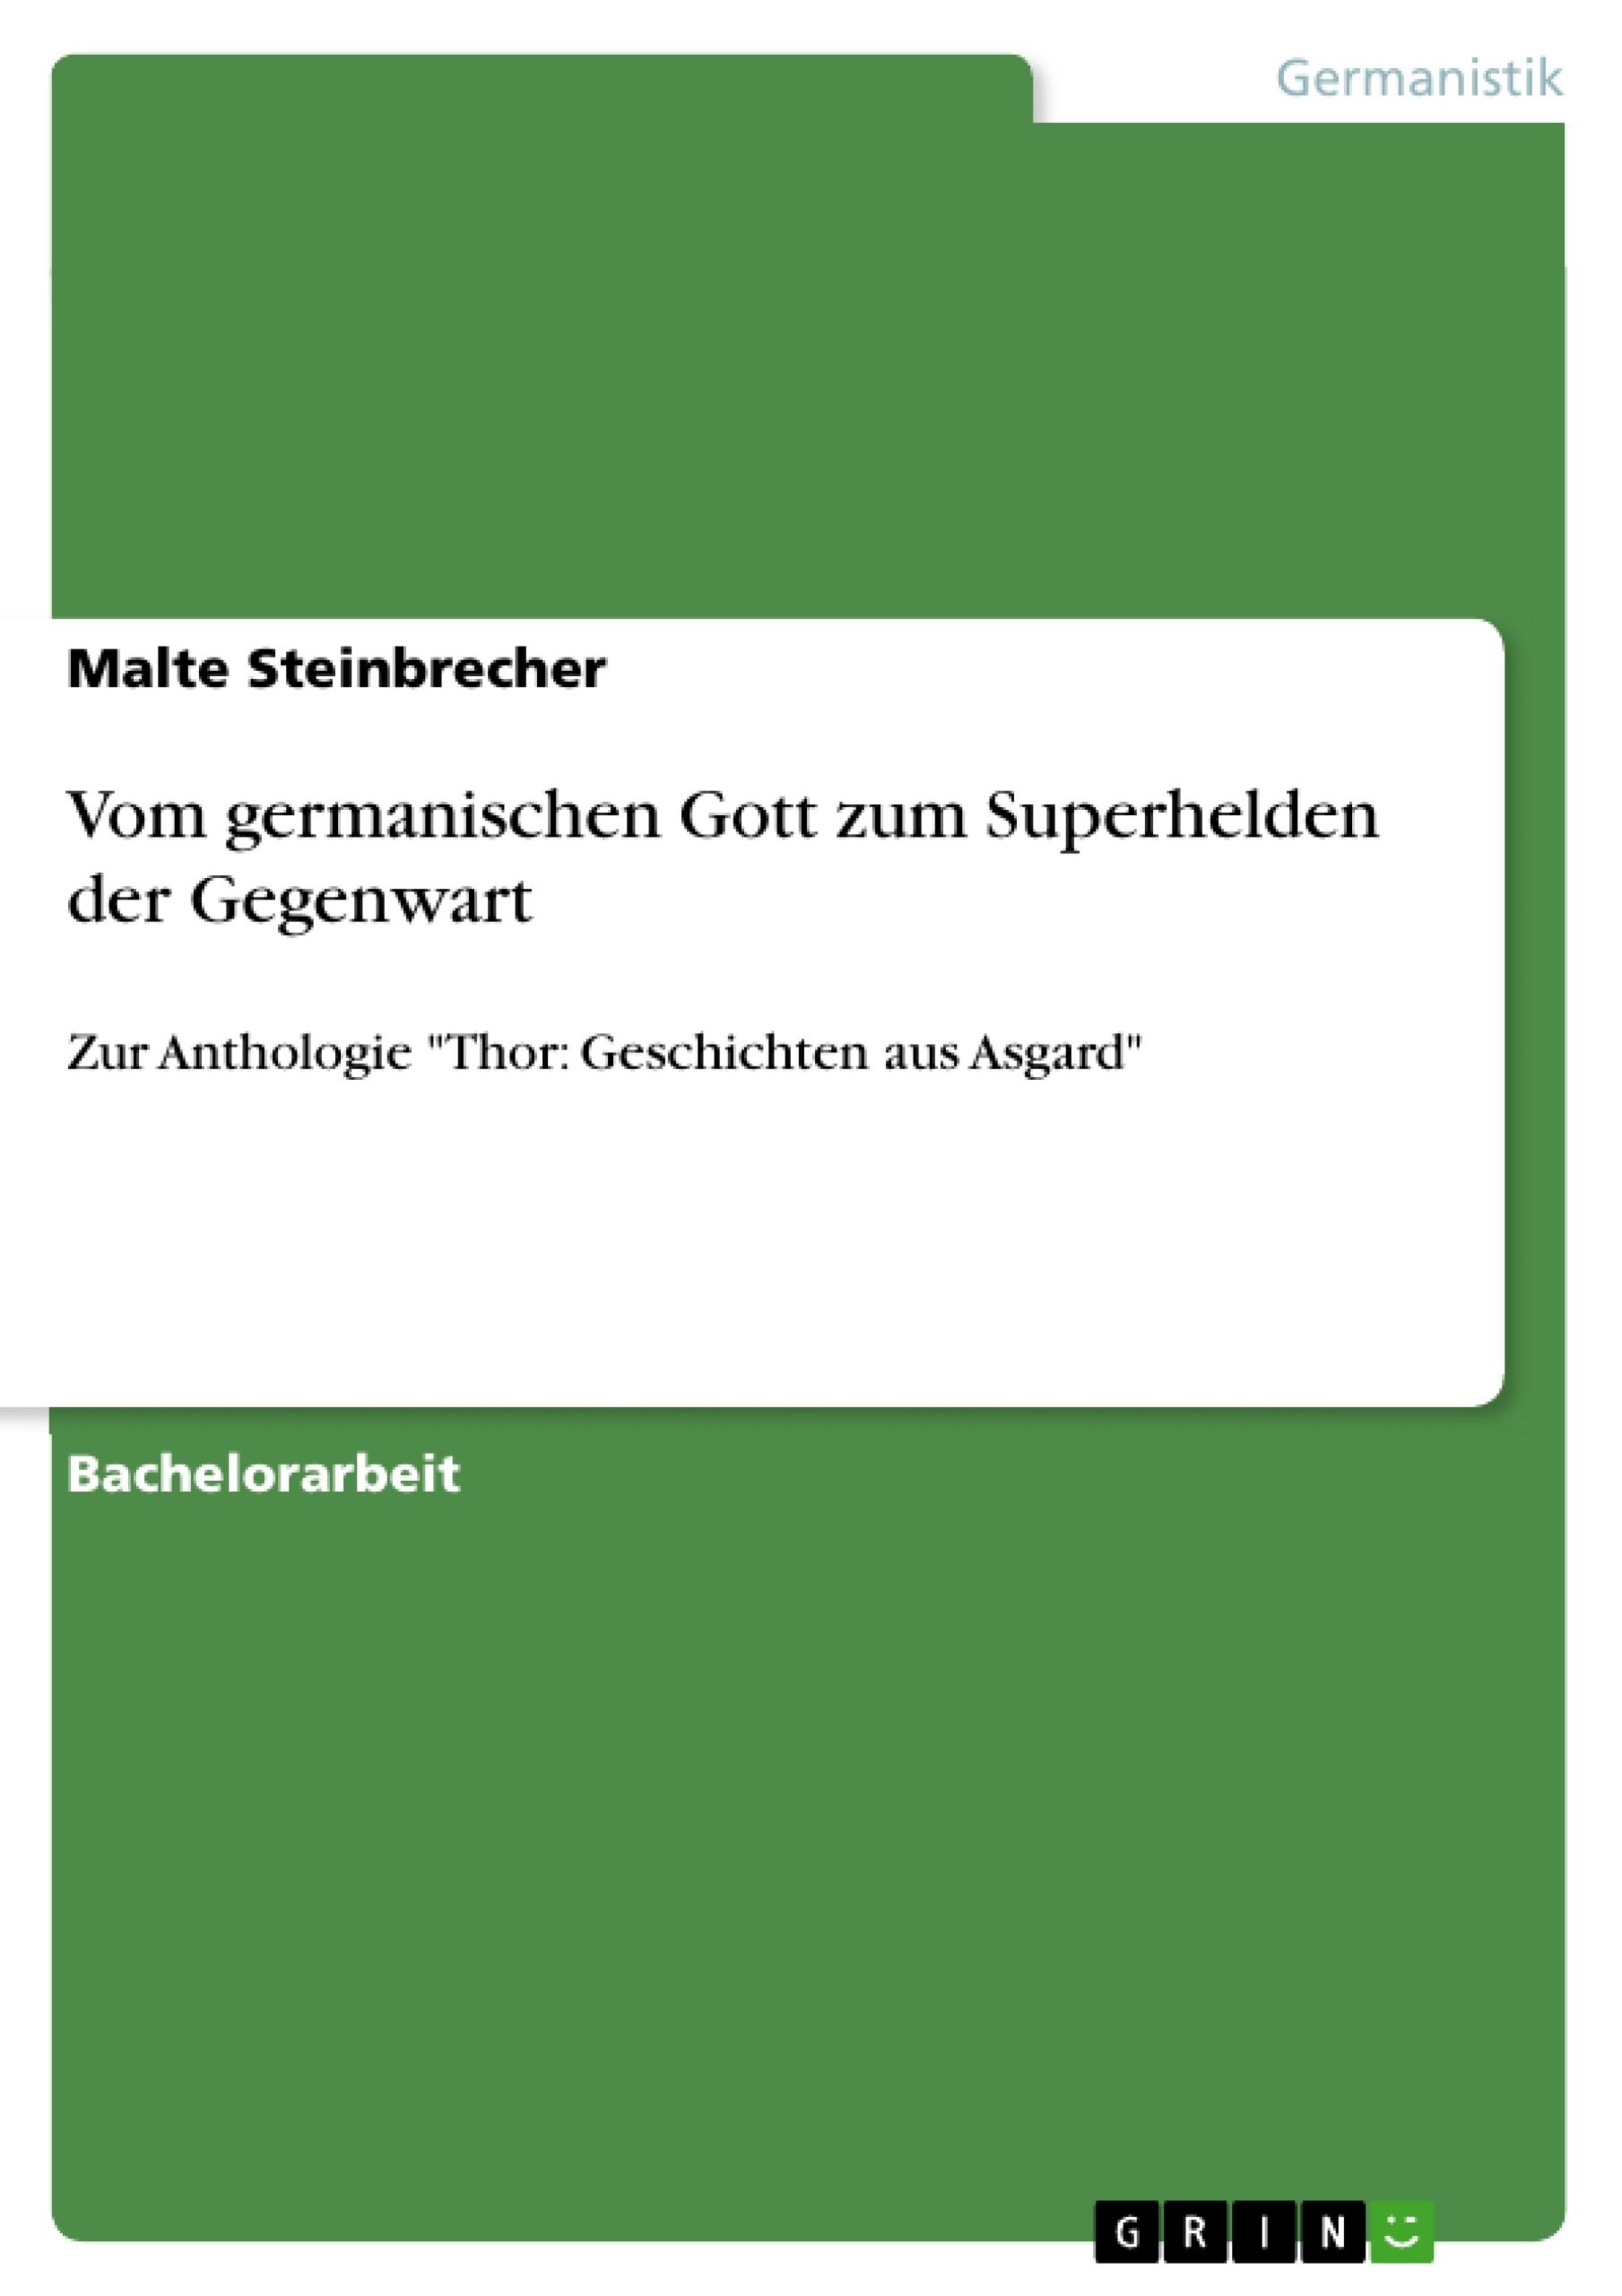 Title: Vom germanischen Gott zum Superhelden der Gegenwart